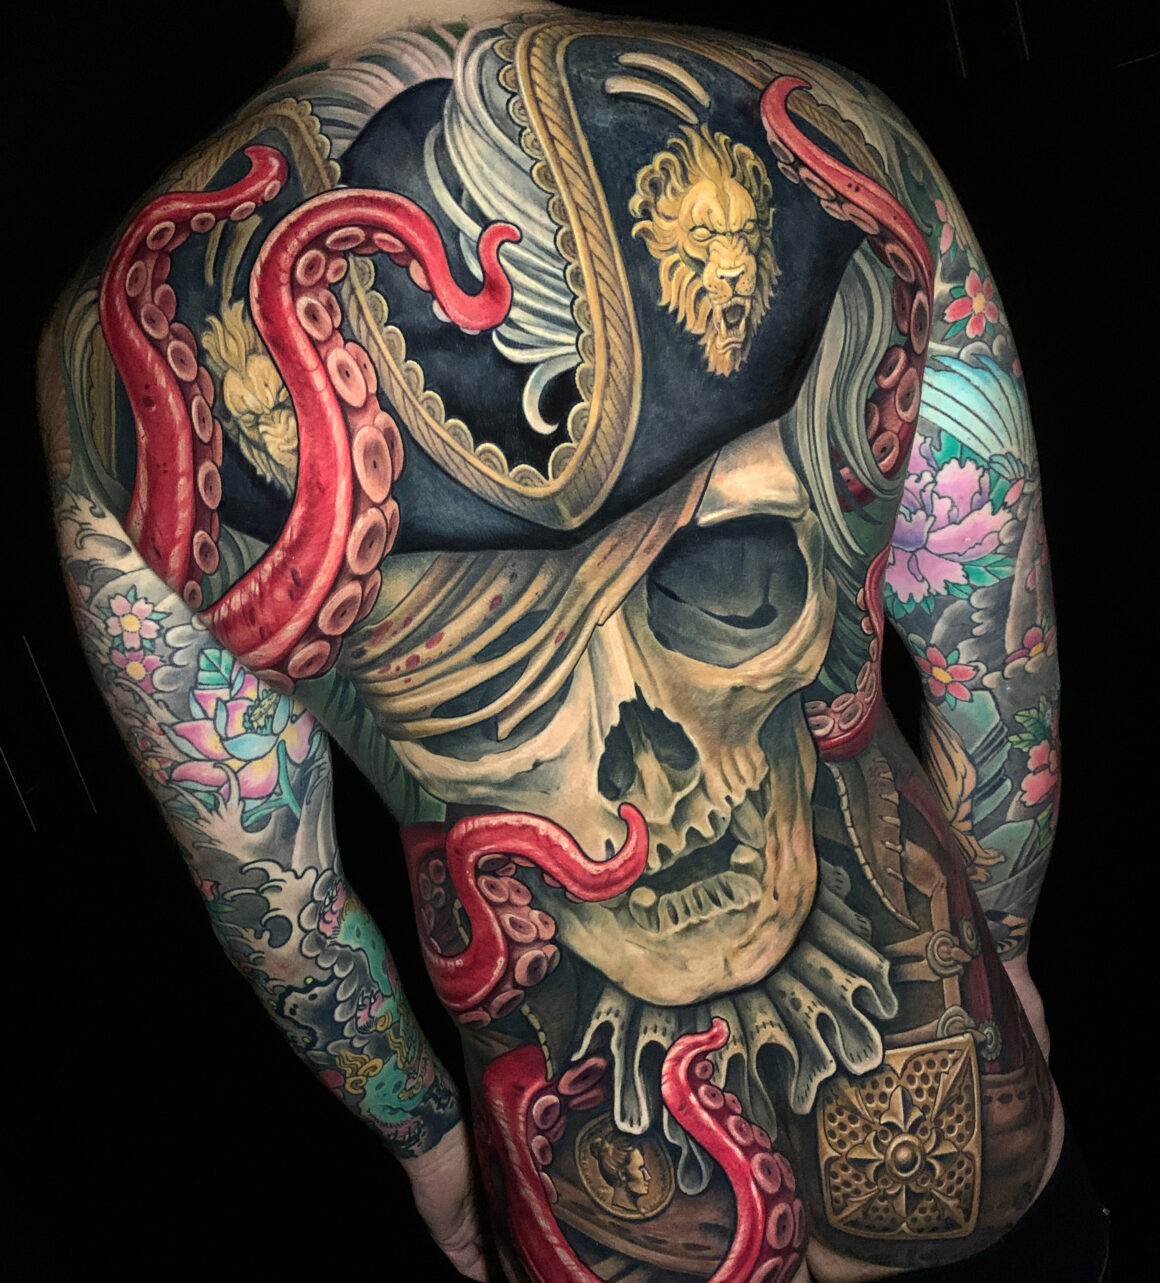 Julian Siebert tattoos: solid custom designs - Tattoo Life